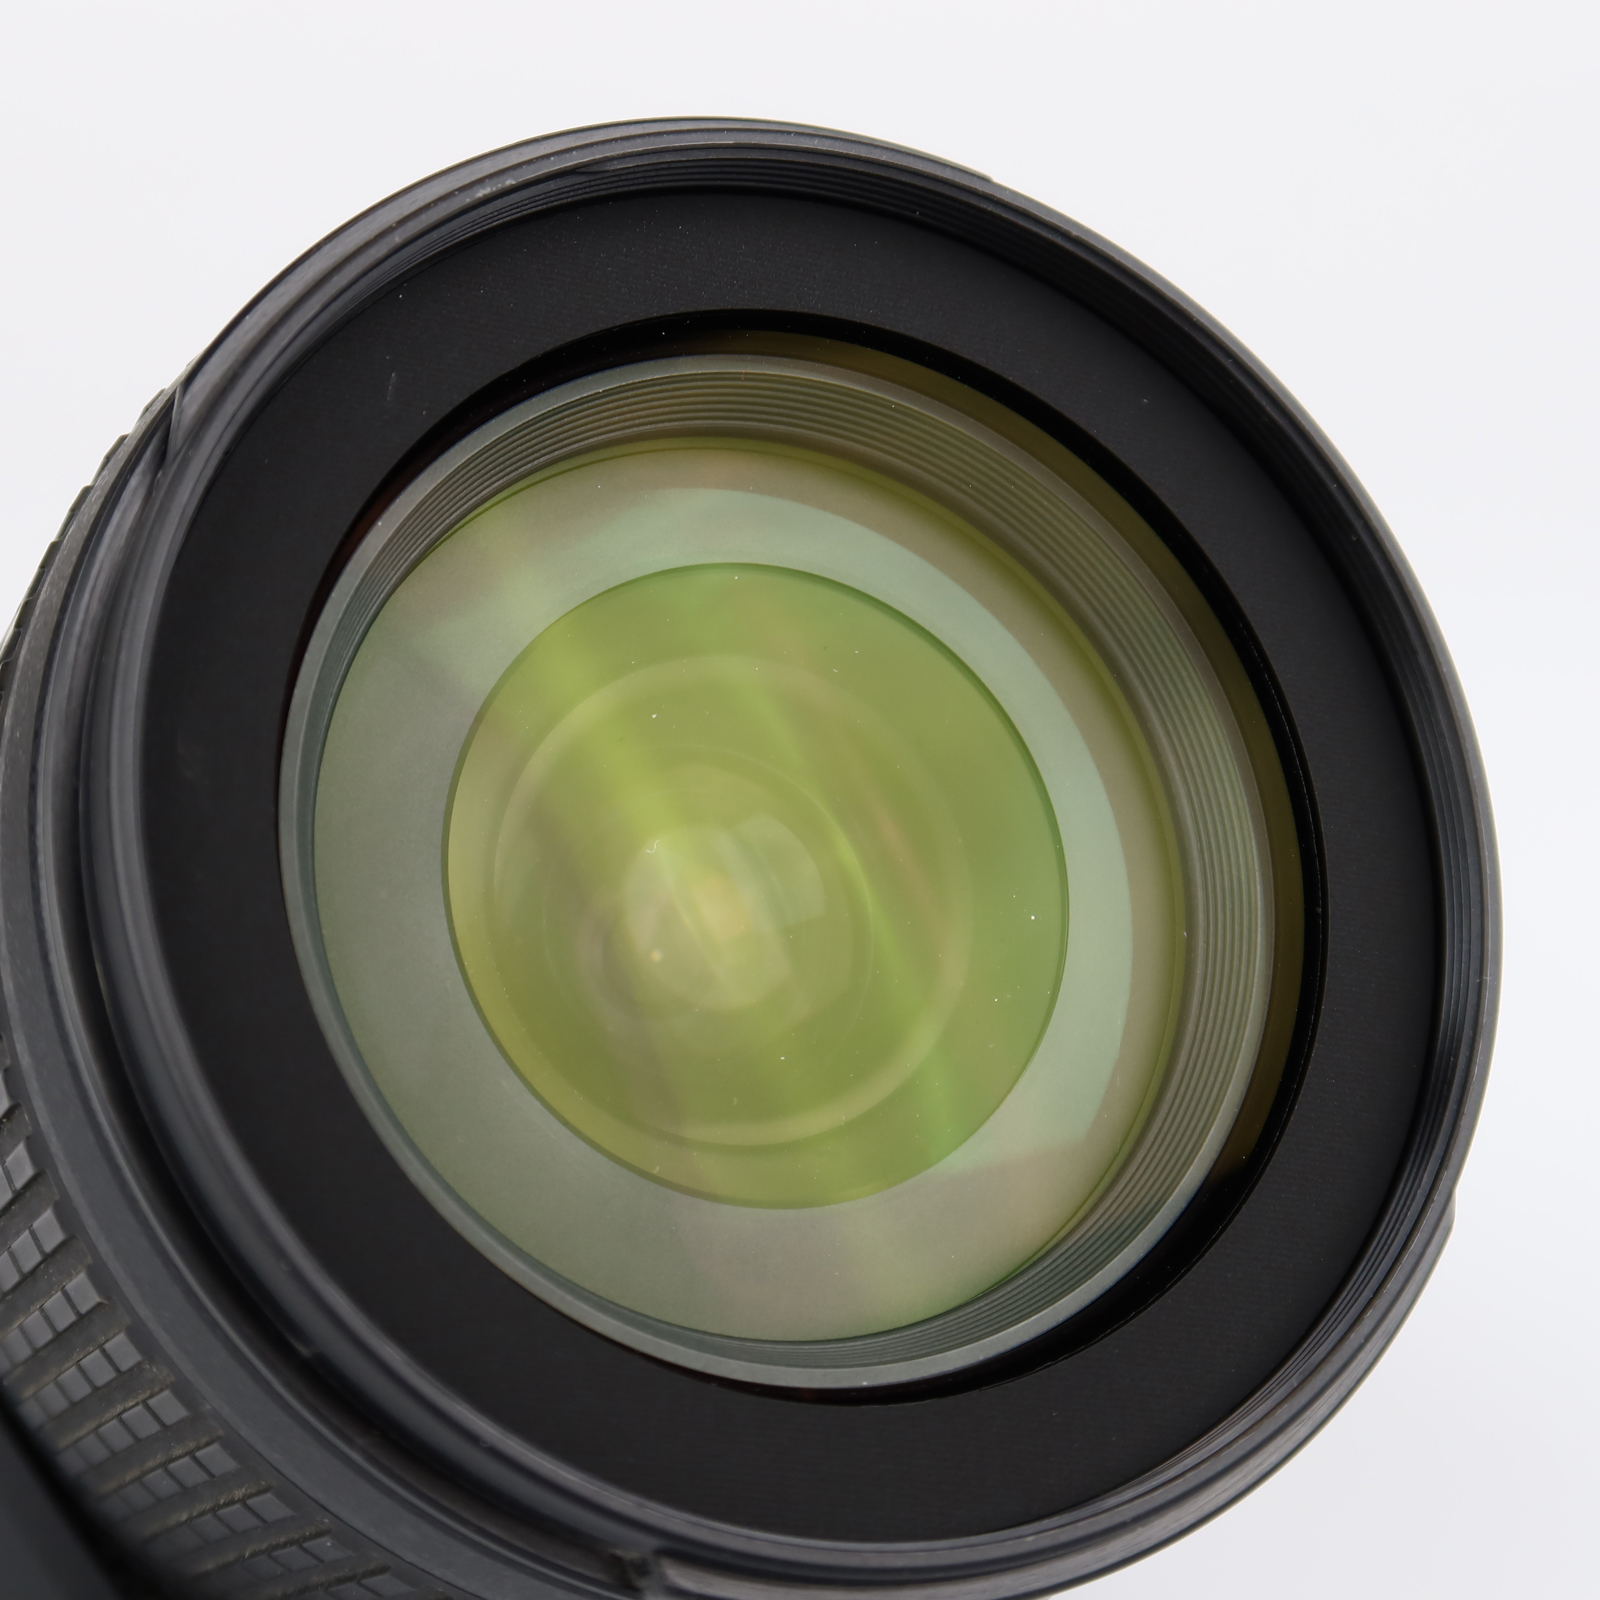 (Myyty) Nikon AF-S Nikkor 18-105mm f/3.5-5.6G DX ED VR (käytetty)